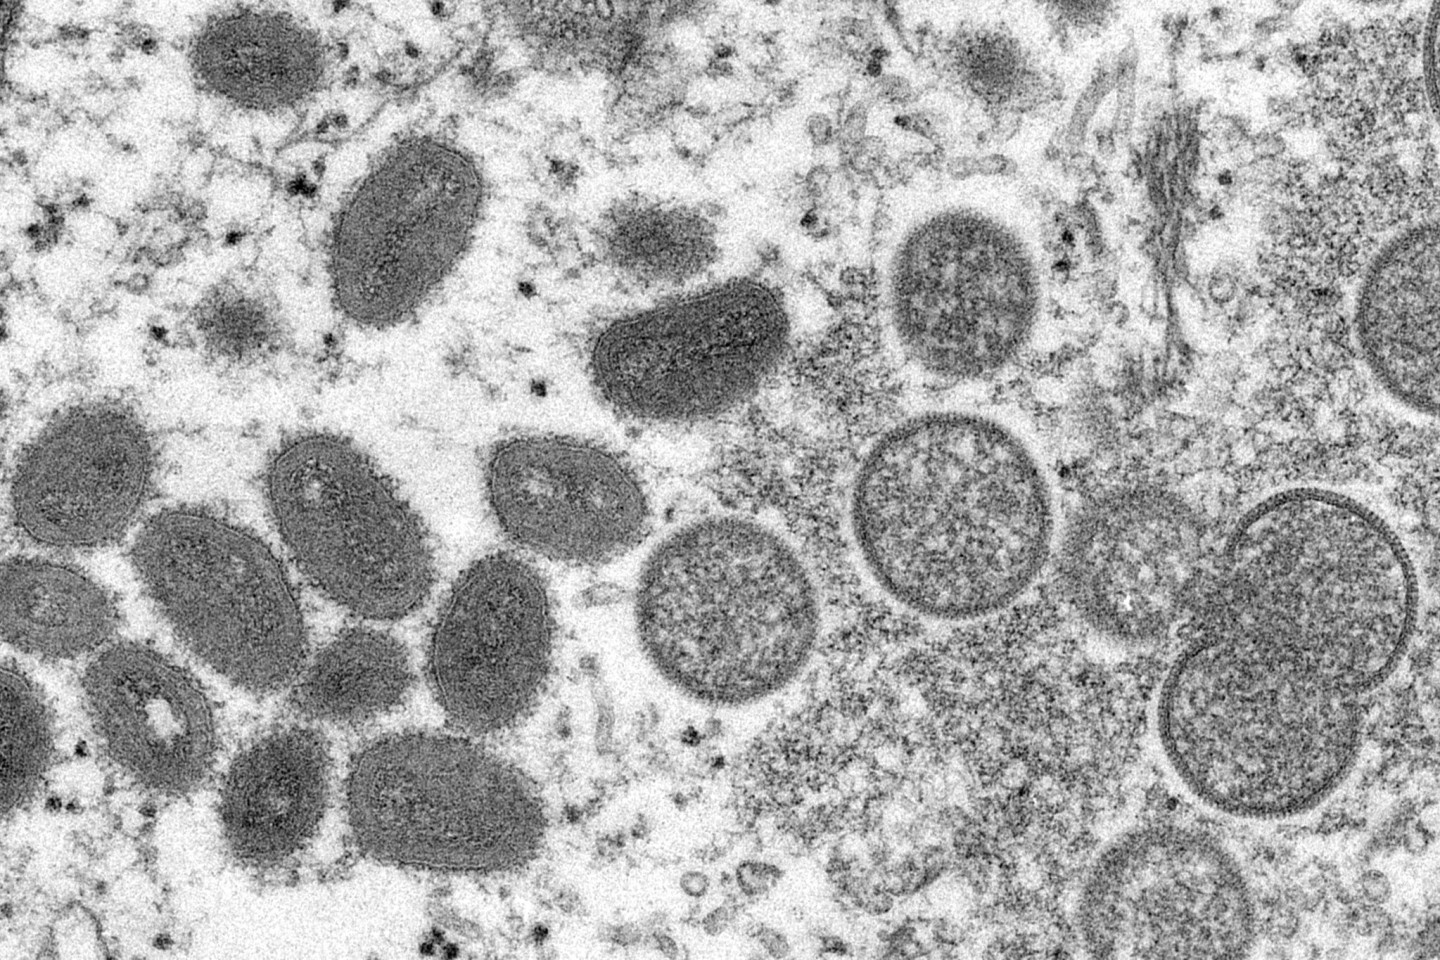 Diese elektronenmikroskopische Aufnahme aus dem Jahr 2003, die von den Centers for Disease Control and Prevention zur Verfügung gestellt wurde, zeigt reife, ovale Affenpockenviren (l) und k...